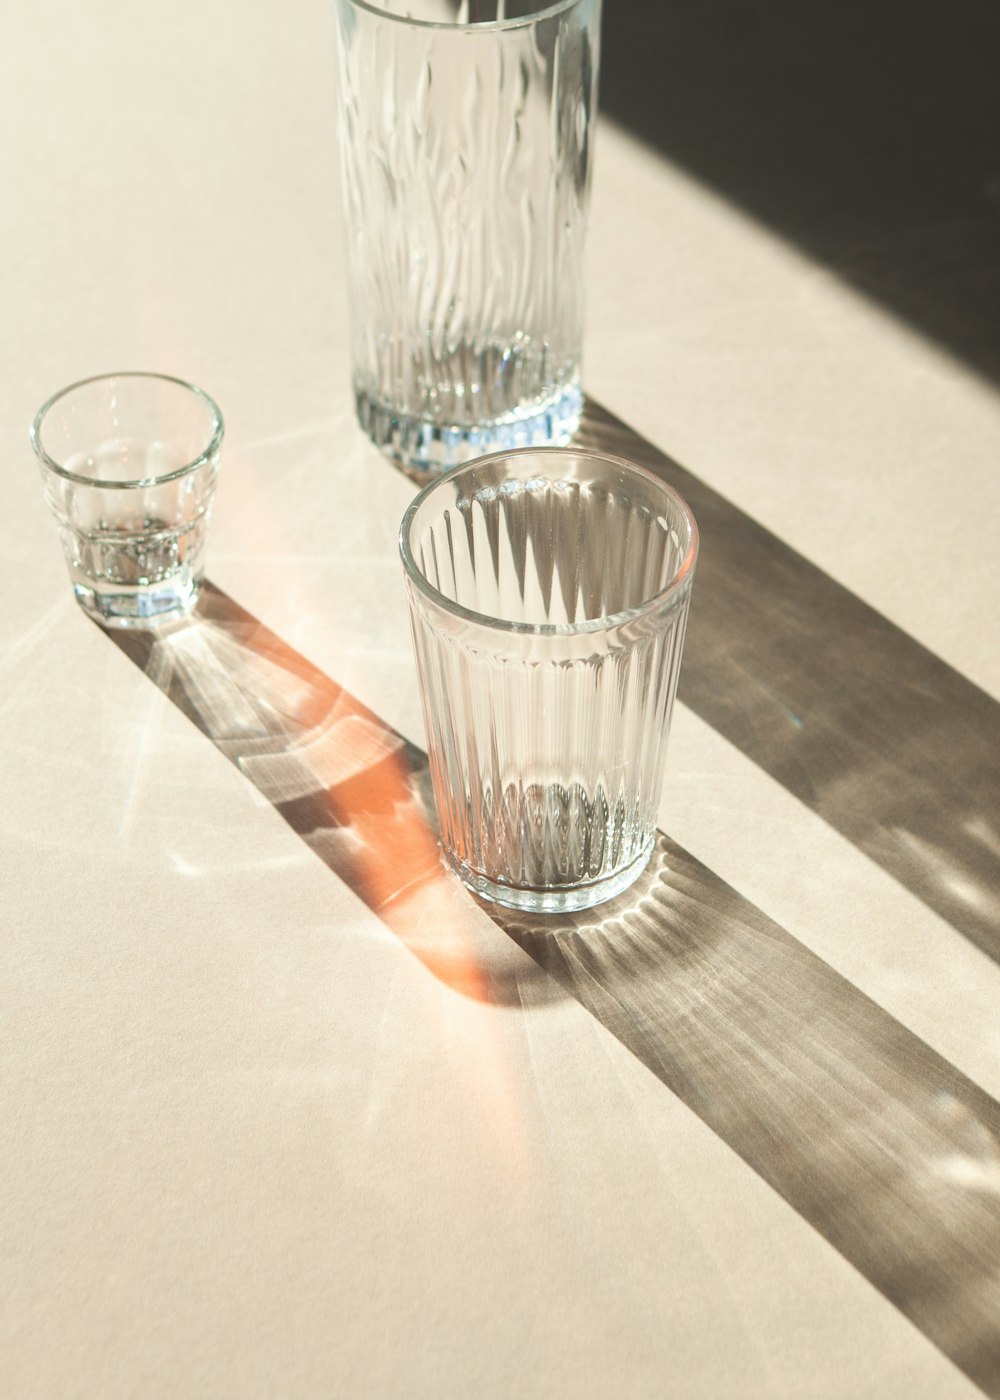 Vaso transparente sobre la mesa